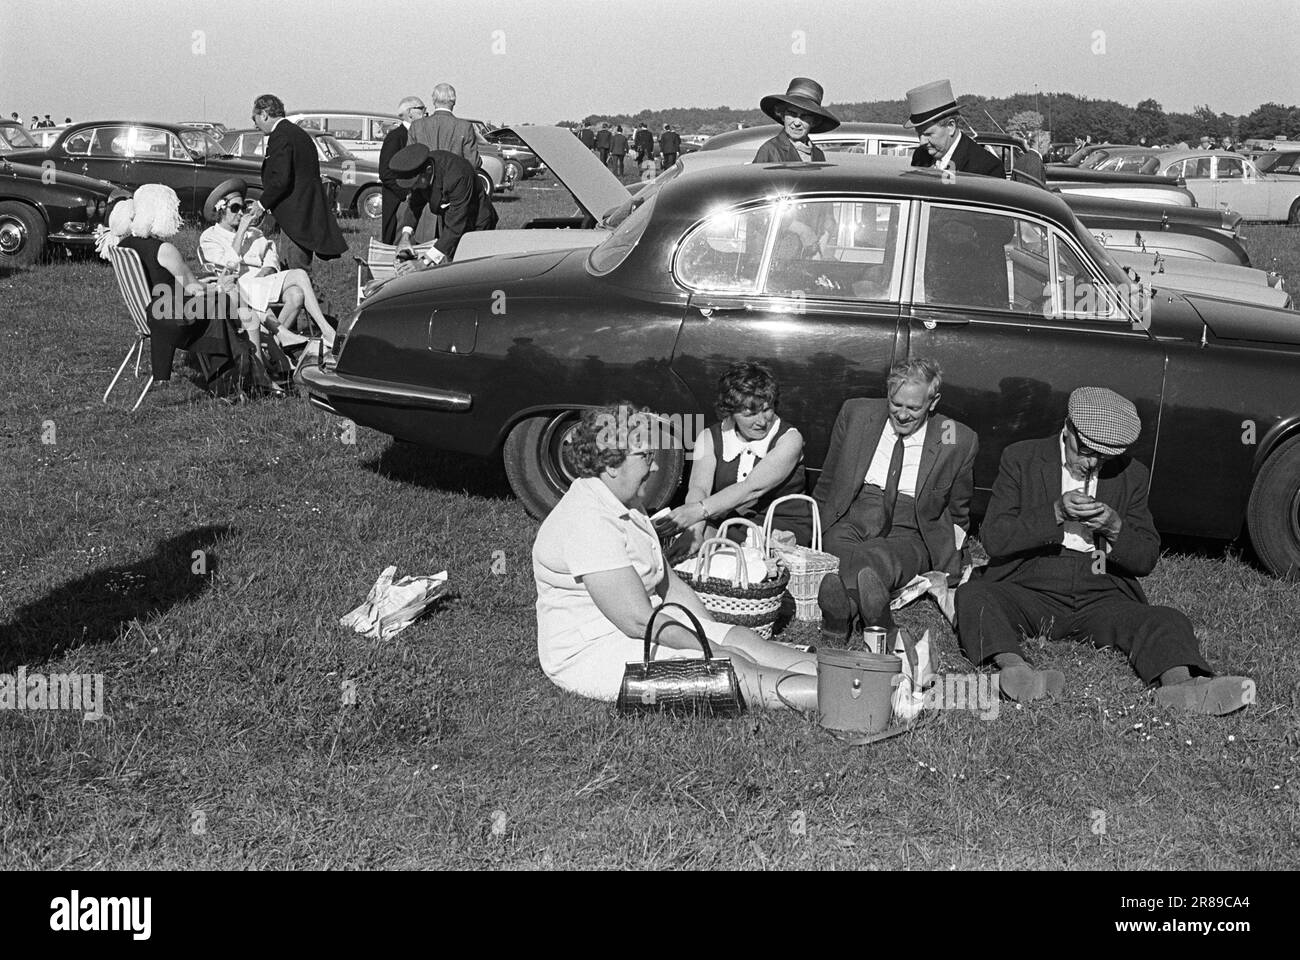 Oberschicht der Arbeiterklasse, Hut und Schwanz, Stoffkappe und Pfeife, Derby Day. Londoner verbringen einen Tag bei den Rennen, genießen ein Picknick im Freien auf dem Parkplatz, geschützt vor der Brise und warm in der Sonne, lehnen sie sich gegen einen zurückkehrenden Rennfahrer Jaguar. Epsom Downs, Surrey, England, 3. Juni 1970. HOMER SYKES AUS DEN 1970ER JAHREN Stockfoto